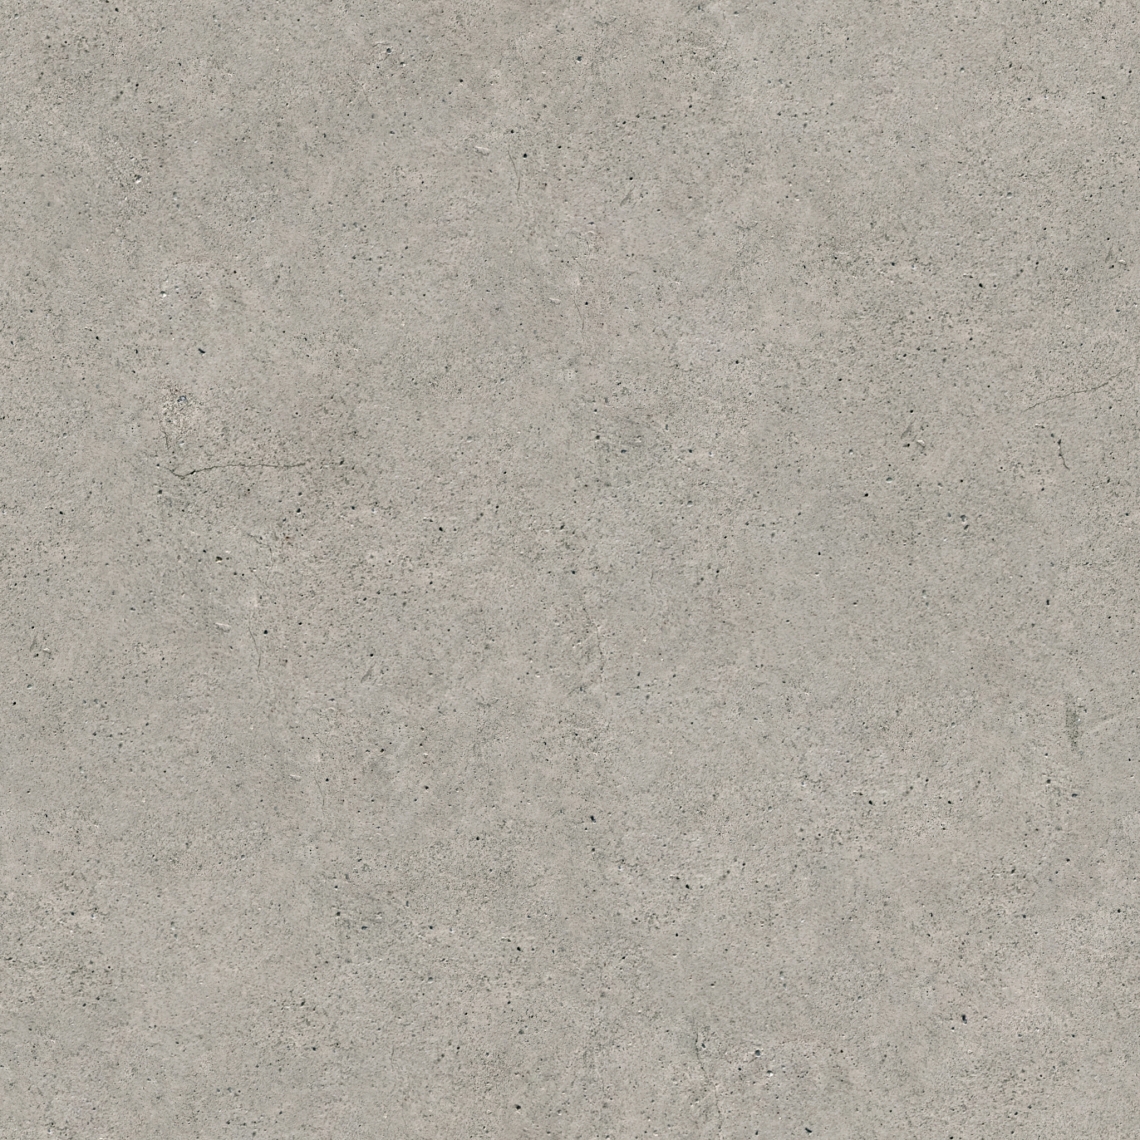 seamless concrete texture